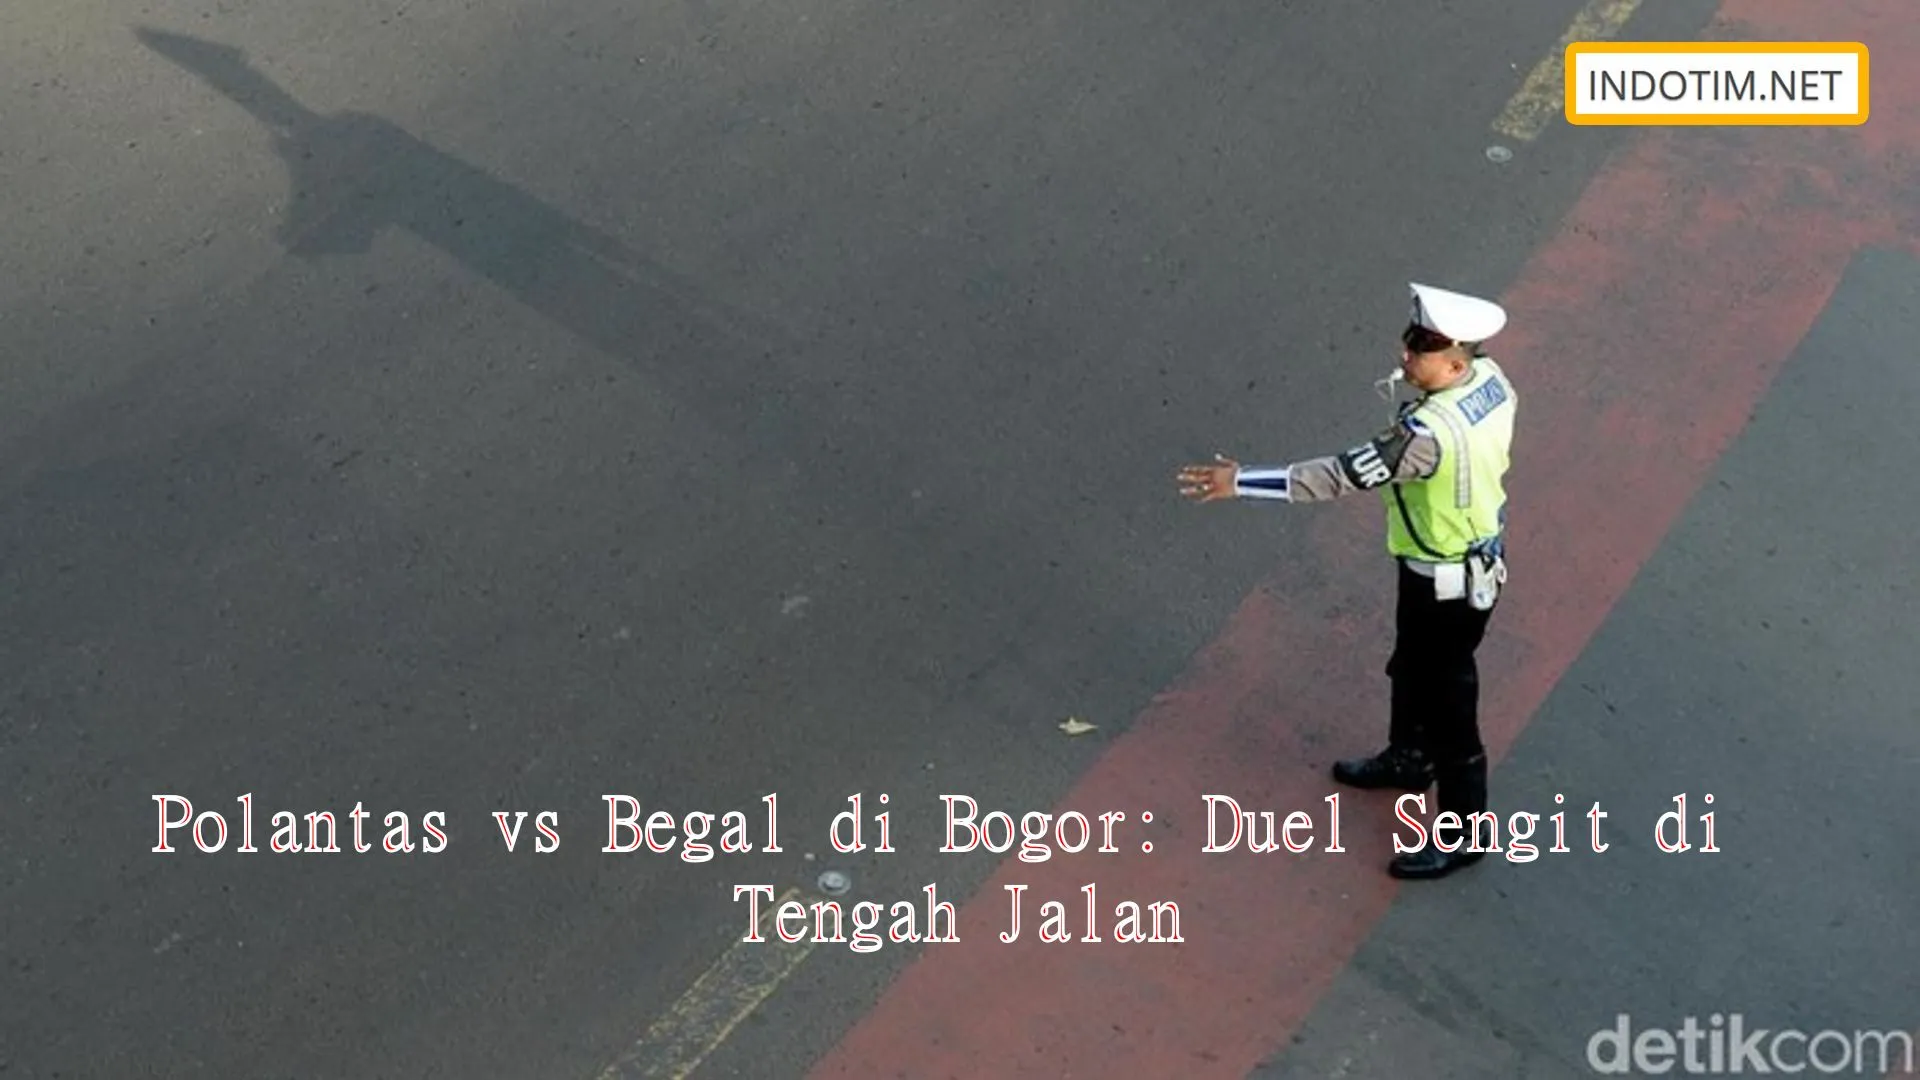 Polantas vs Begal di Bogor: Duel Sengit di Tengah Jalan